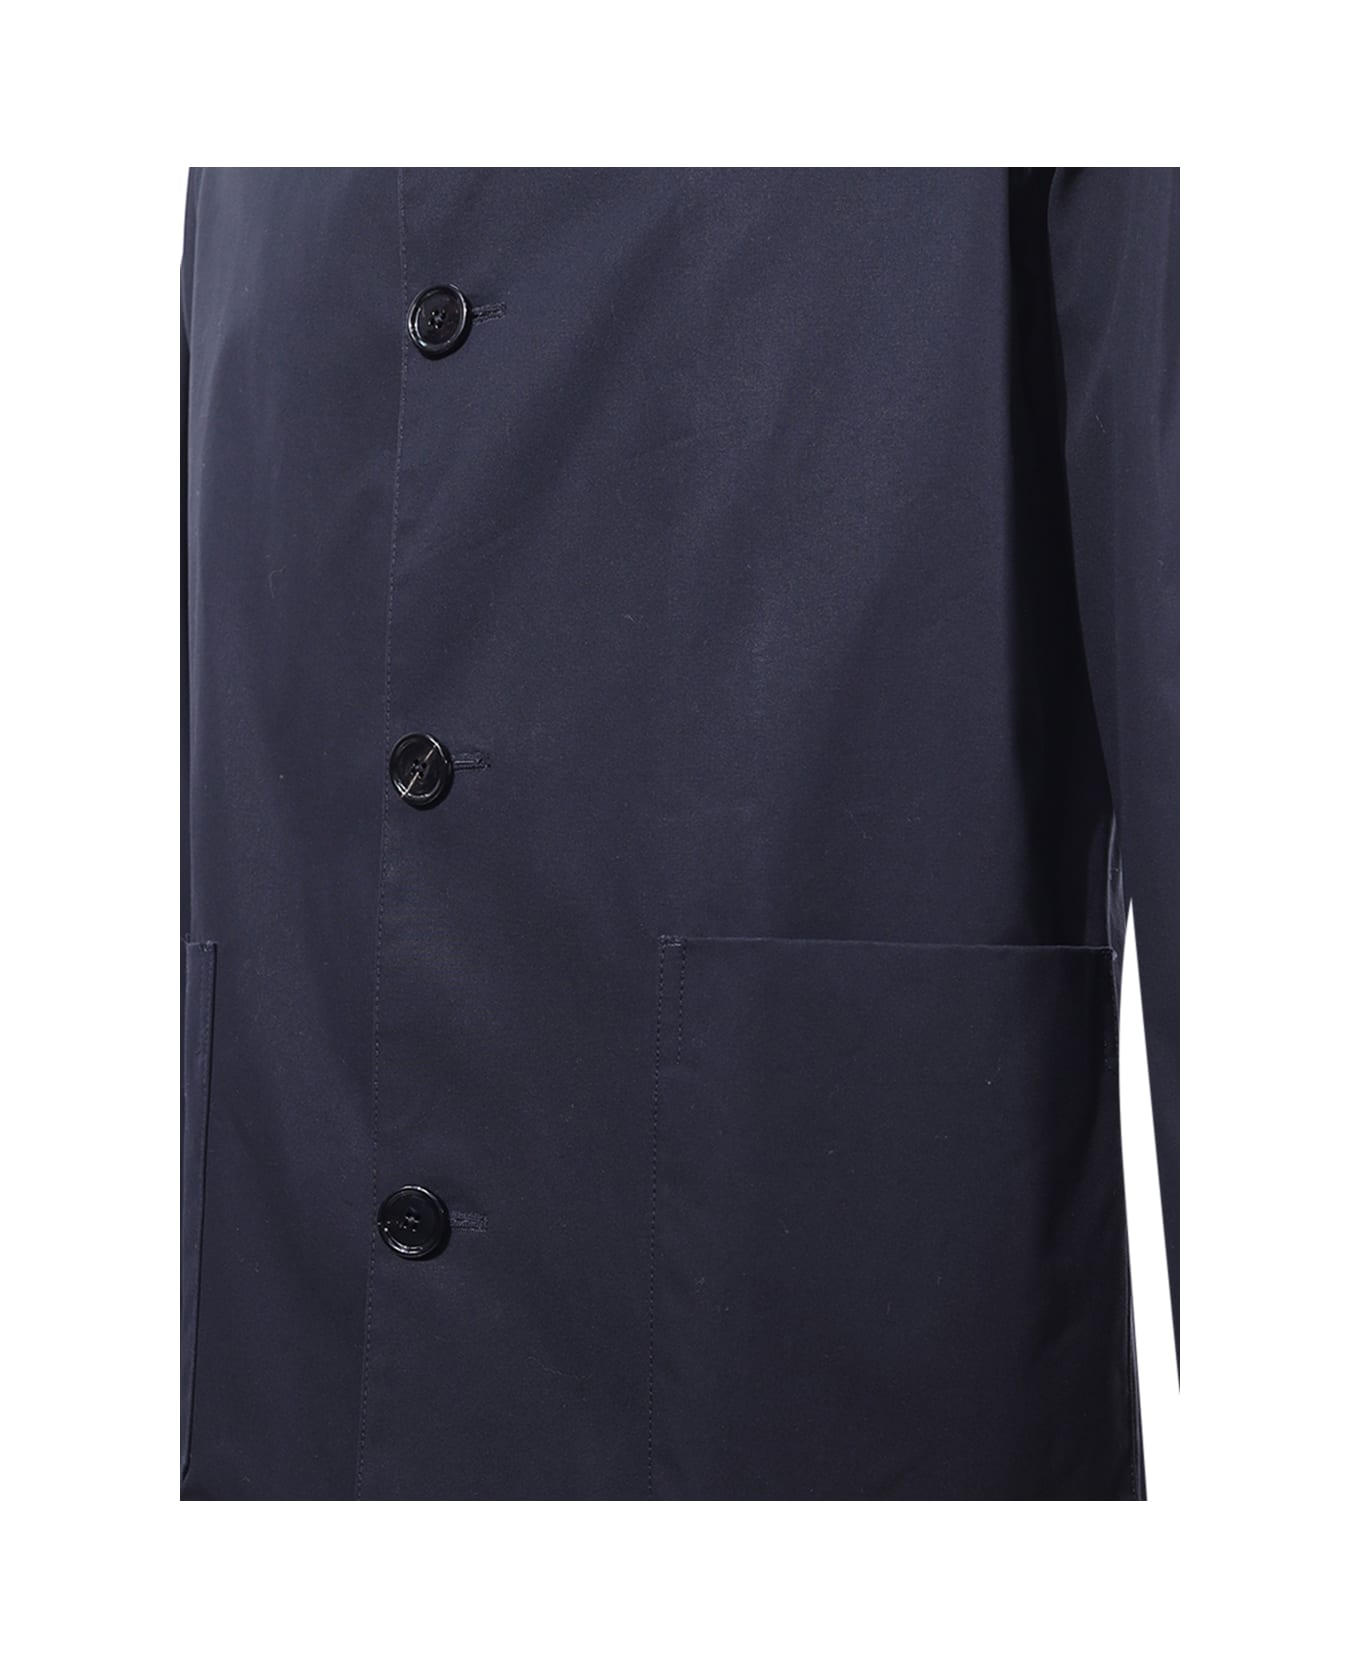 Dondup Shirt Style Jacket - Blue